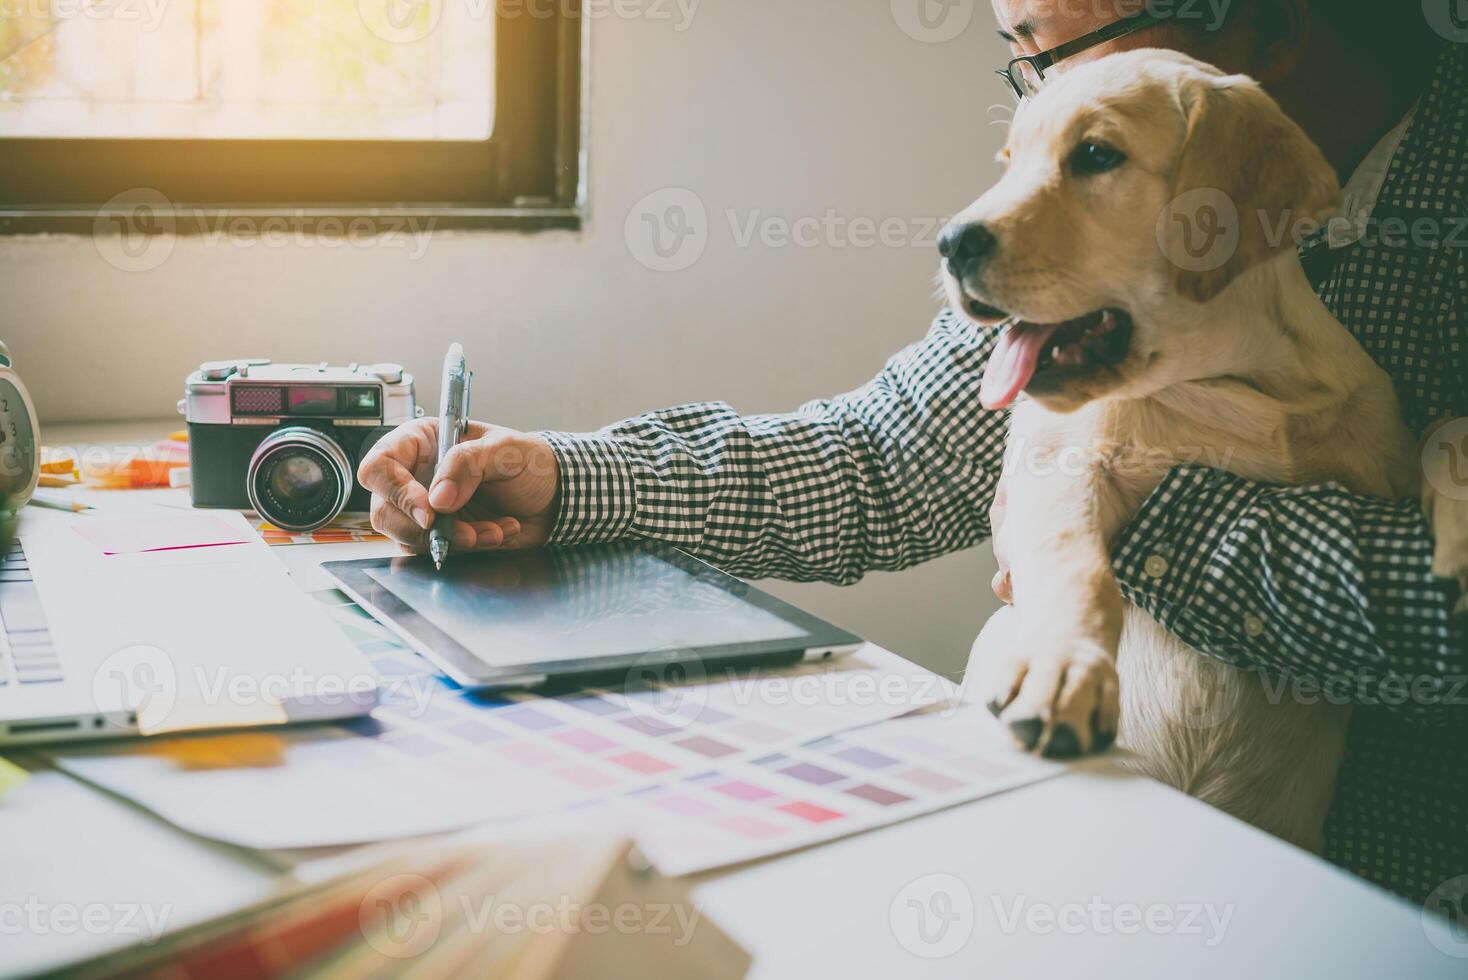 ontwerpers en ontwerpers werk Bij huis door draag- puppy's in hun armen. foto